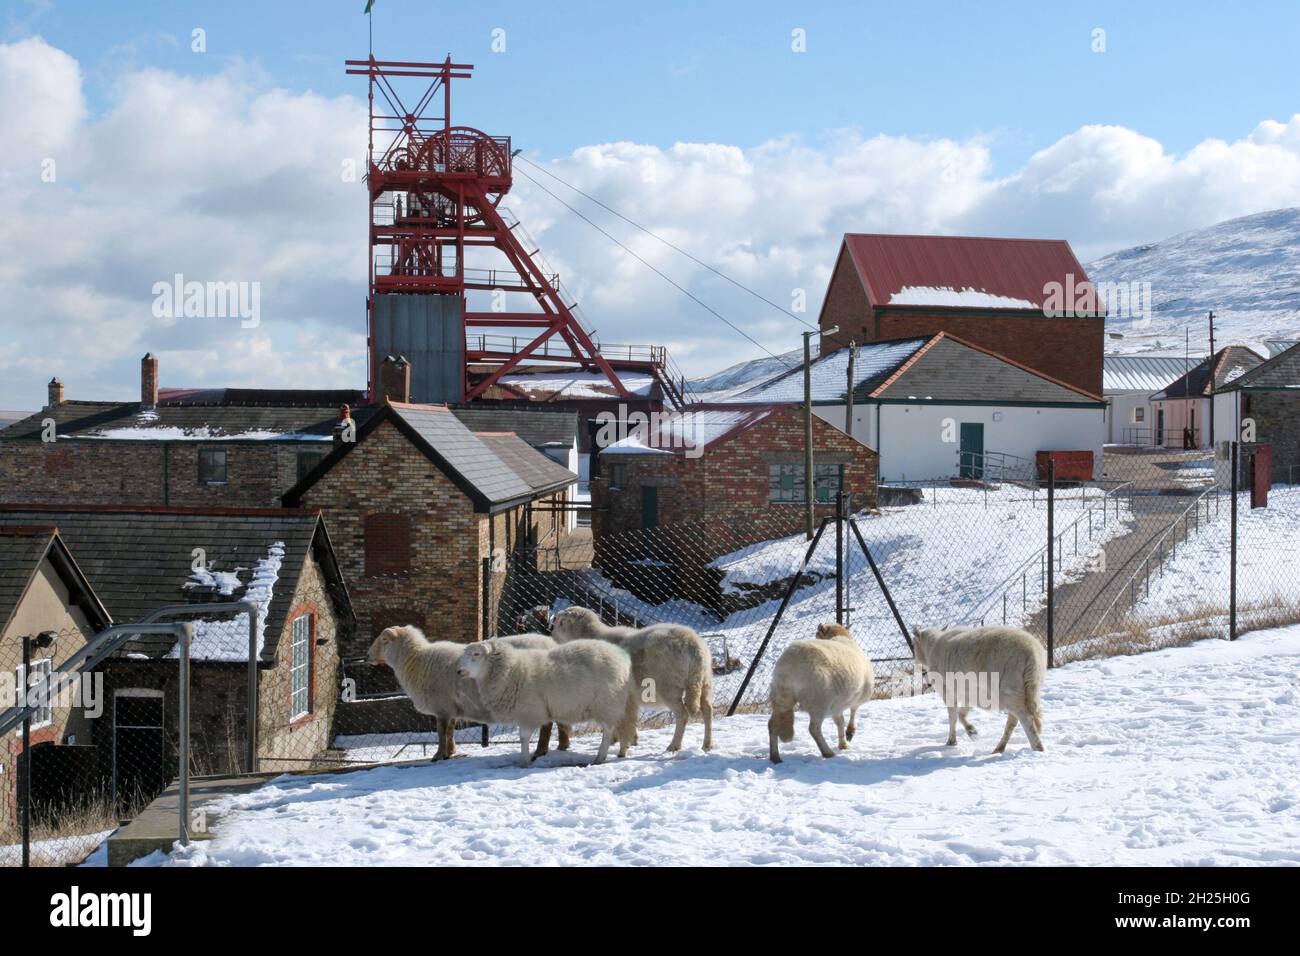 Big Pit musée de la mine de charbon en moutons de neige montrant tour sinueuse et hors des bâtiments ciel bleu nuages blancs moelleux, espace de copie, Blaenafon, pays de Galles, Royaume-Uni espace de copie Banque D'Images